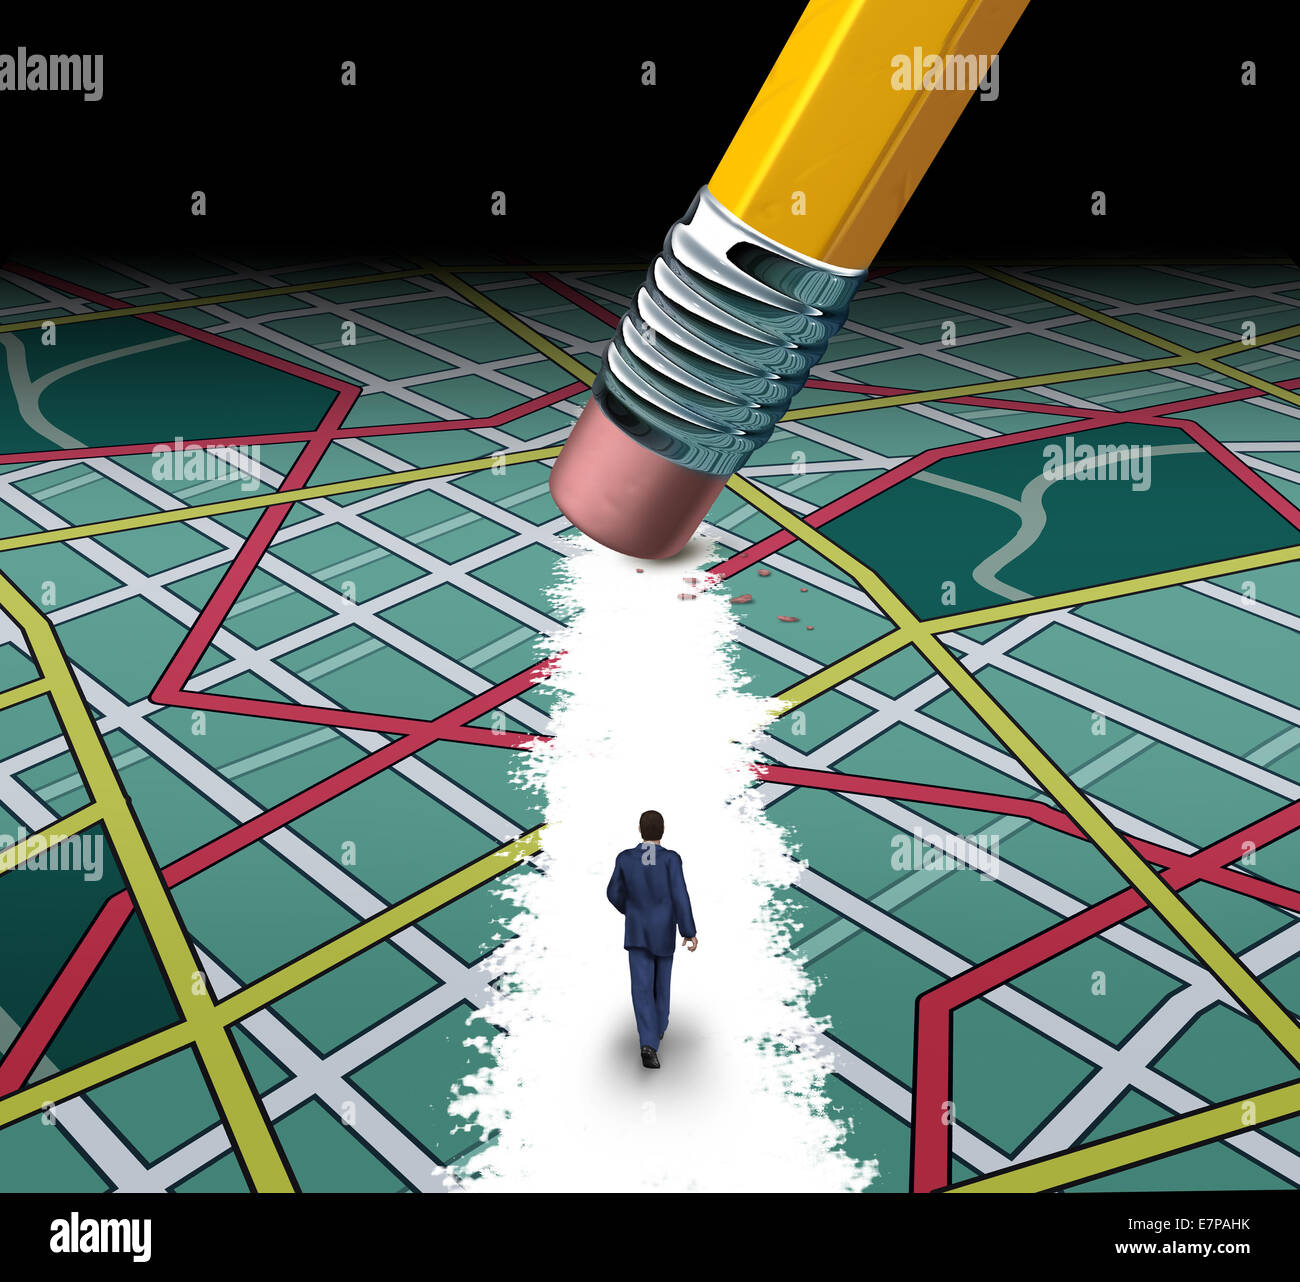 Innovative Wege und Straße zum Erfolgskonzept als Geschäftsmann zu Fuß durch eine verwirrende Autobahn-Karte mit einem Radiergummi löschen einen Weg zu Karriere oder Leben Erfolg durch Durchtrennung der Unordnung. Stockfoto